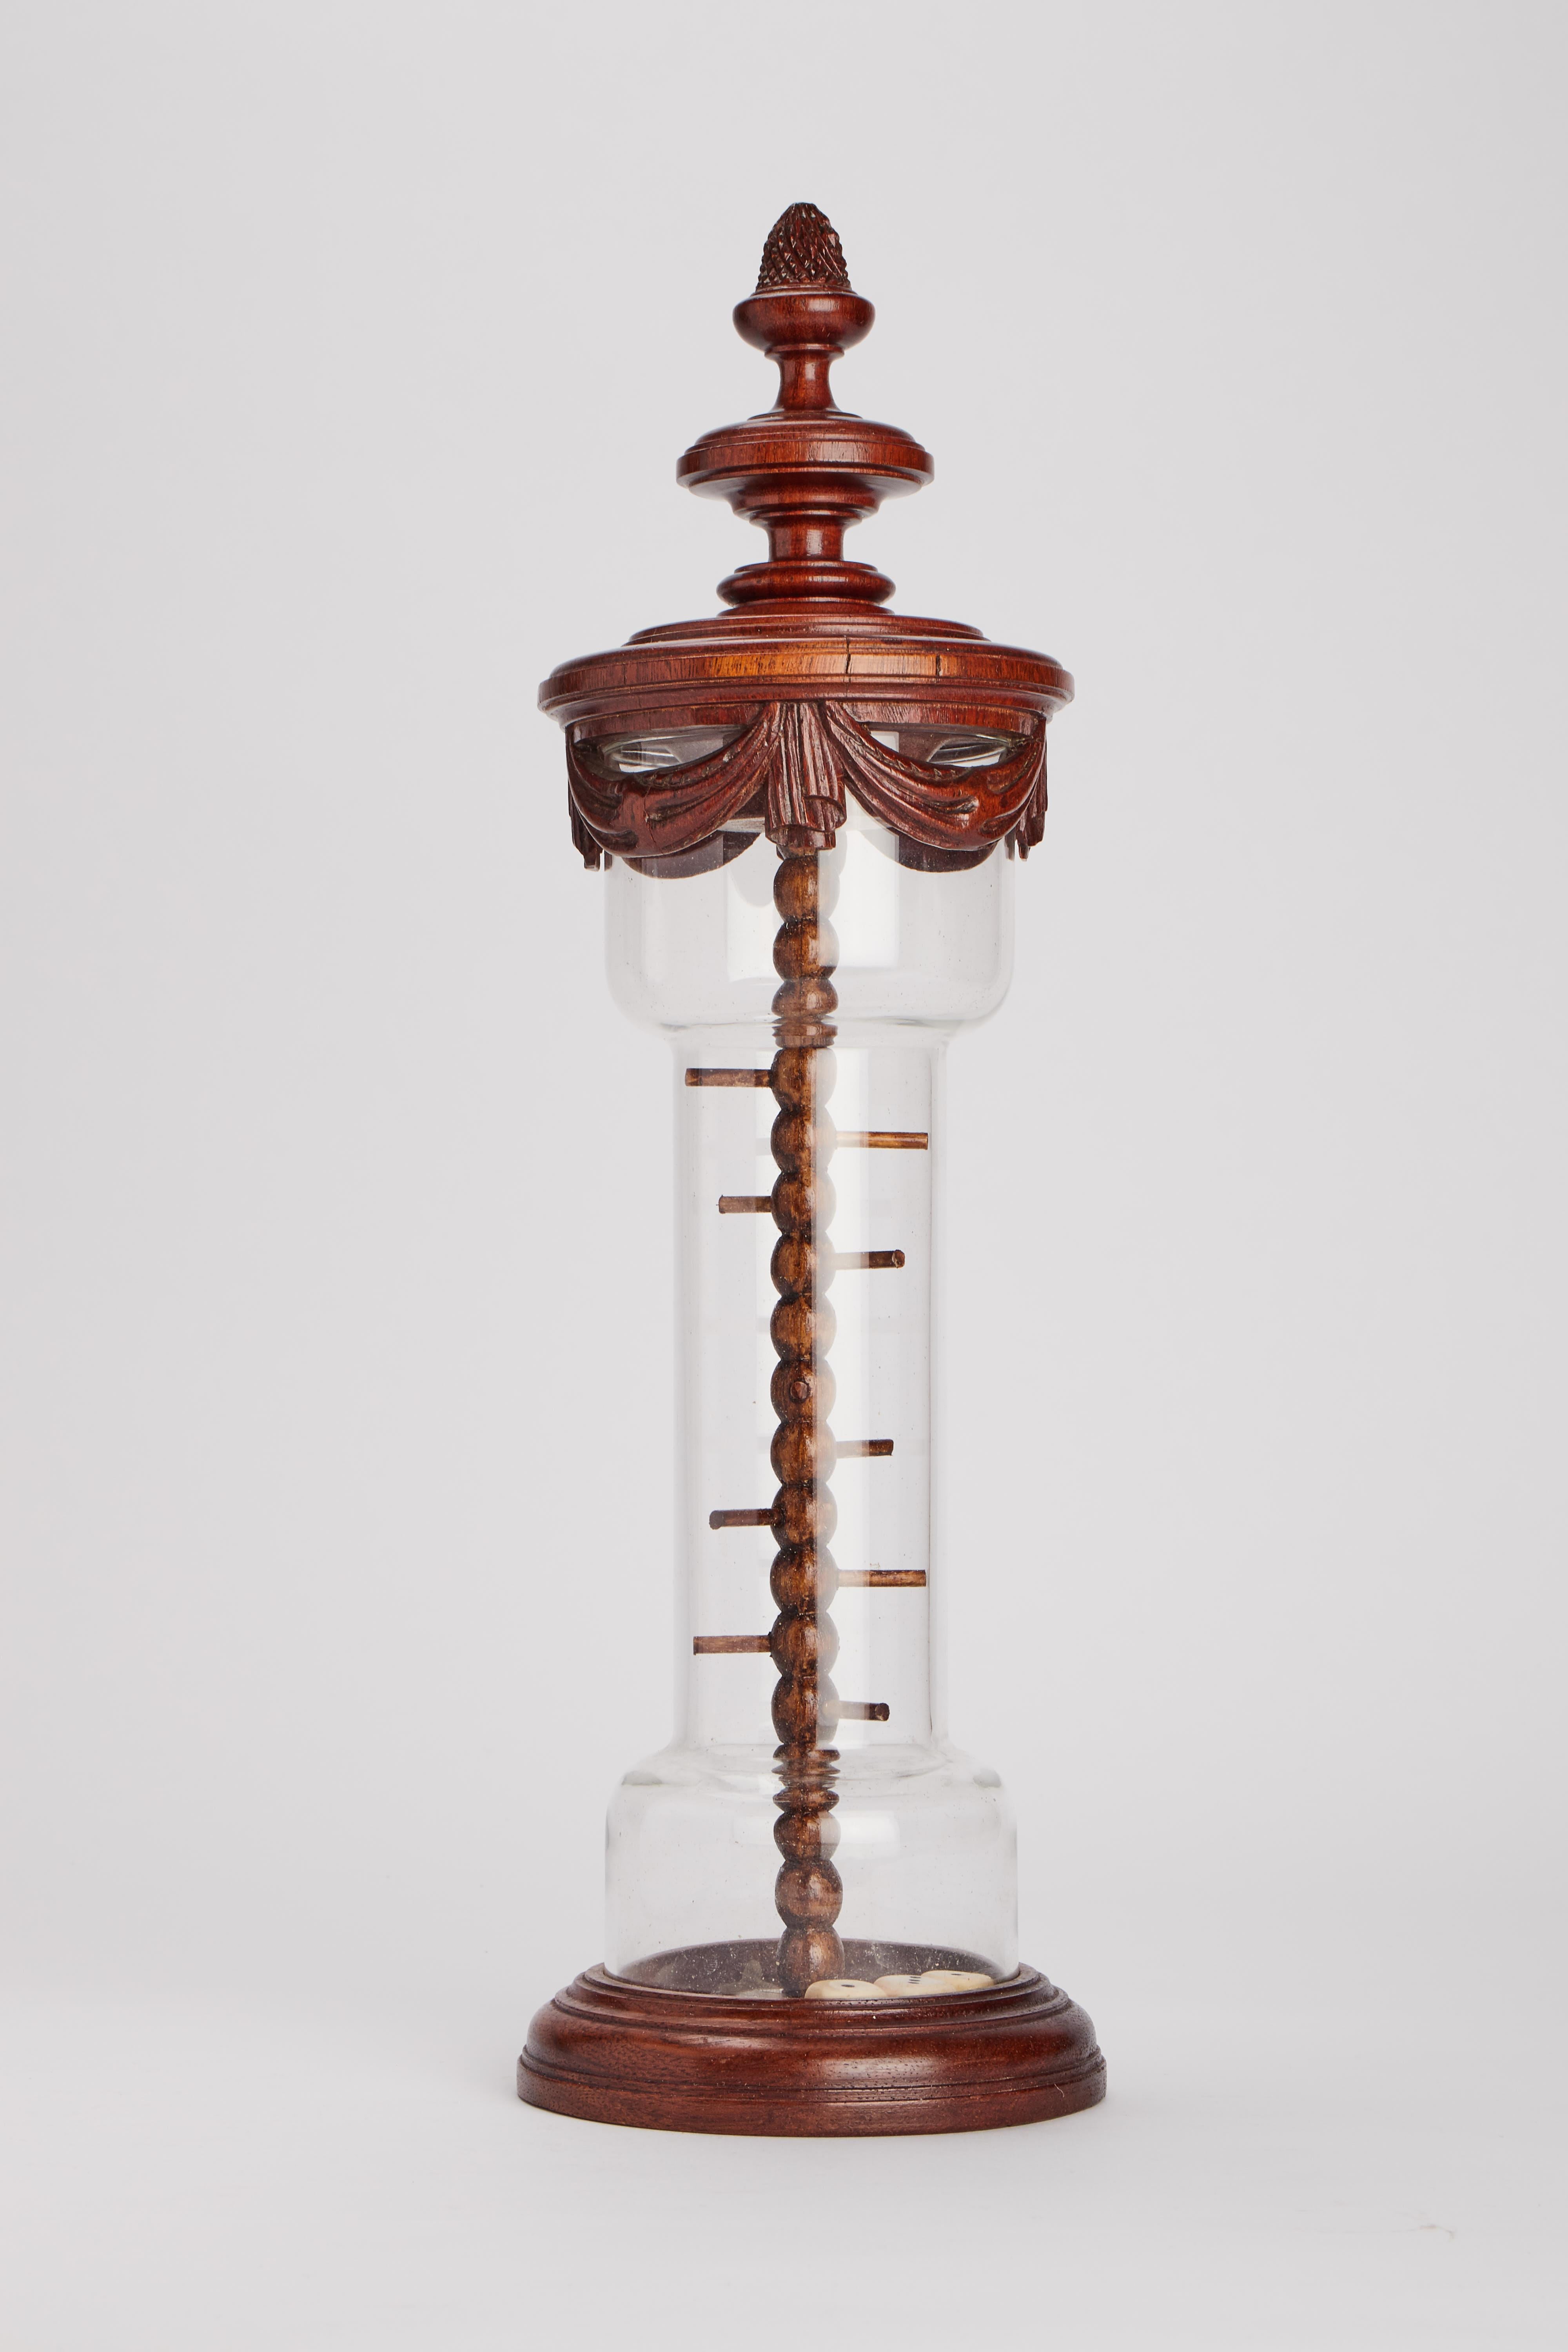 Un jeu de société avec des dés.
La base, le couvercle et l'élément central sont en bois de chêne, le cylindre est en verre et contient trois dés. France, fin du XIXe siècle.
